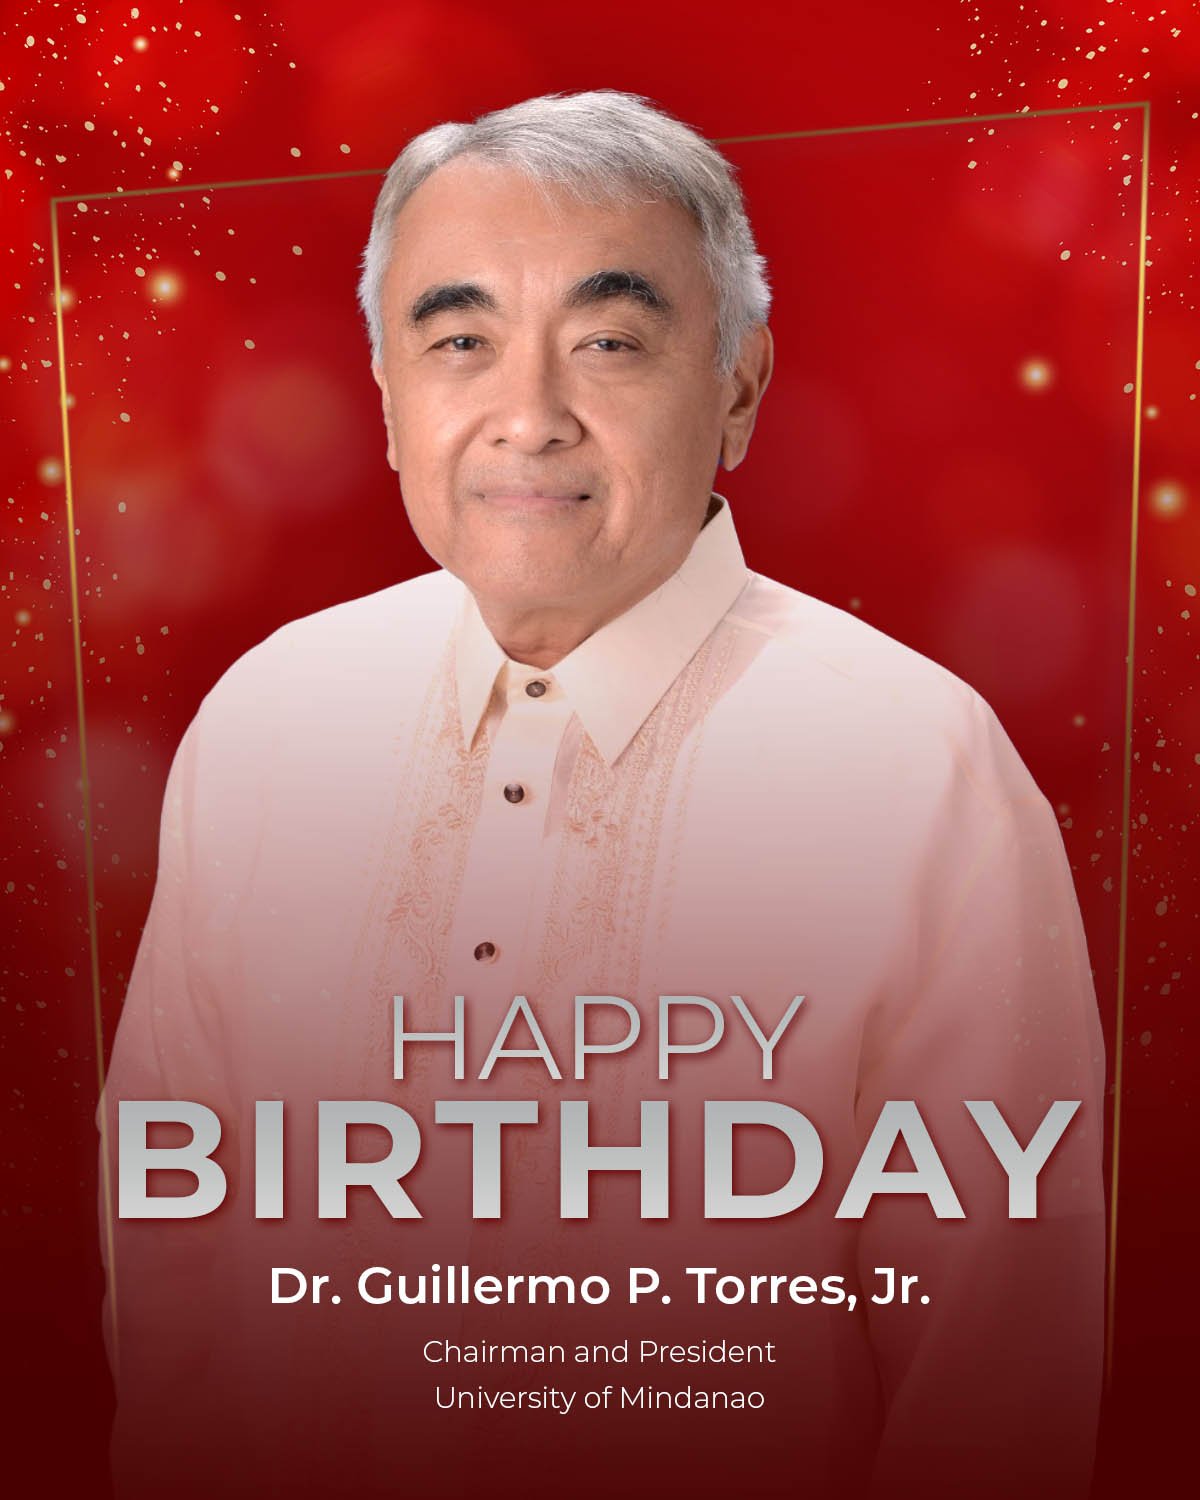 Happy Birthday, Sir Guillermo "Willie" Torres Jr!